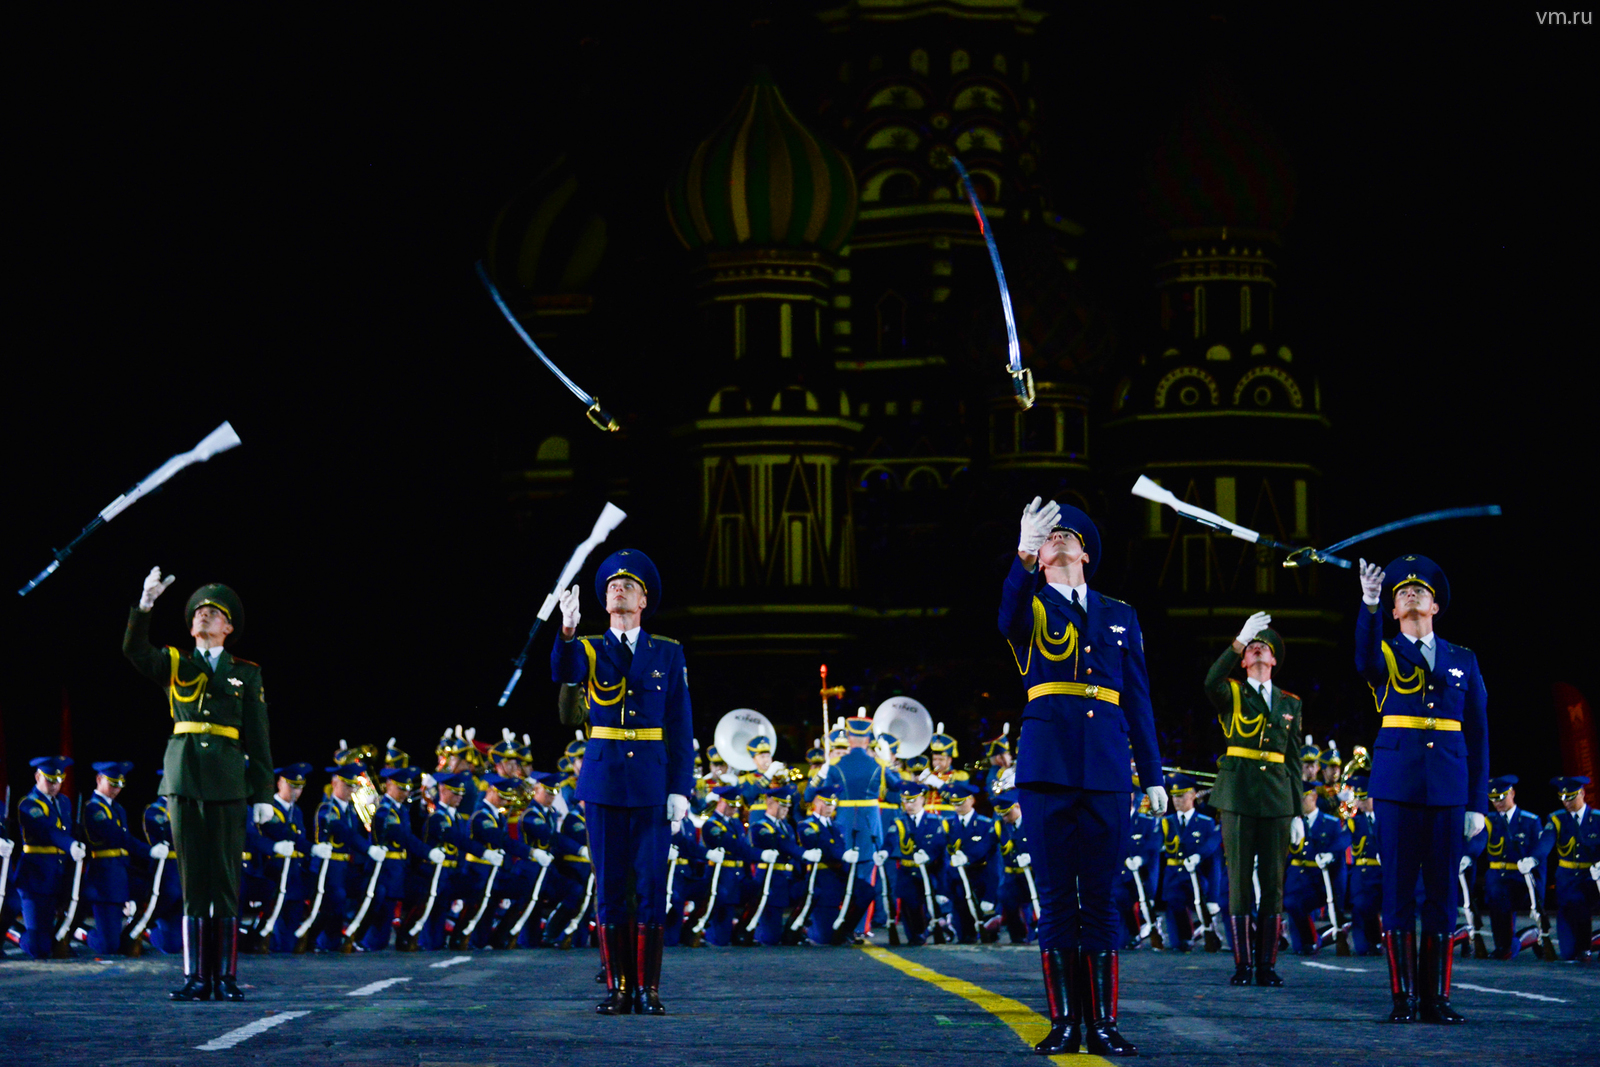 Международный военно-музыкальный фестиваль «Спасская башня» / Фото: Наталья Феоктистова / Вечерняя Москва